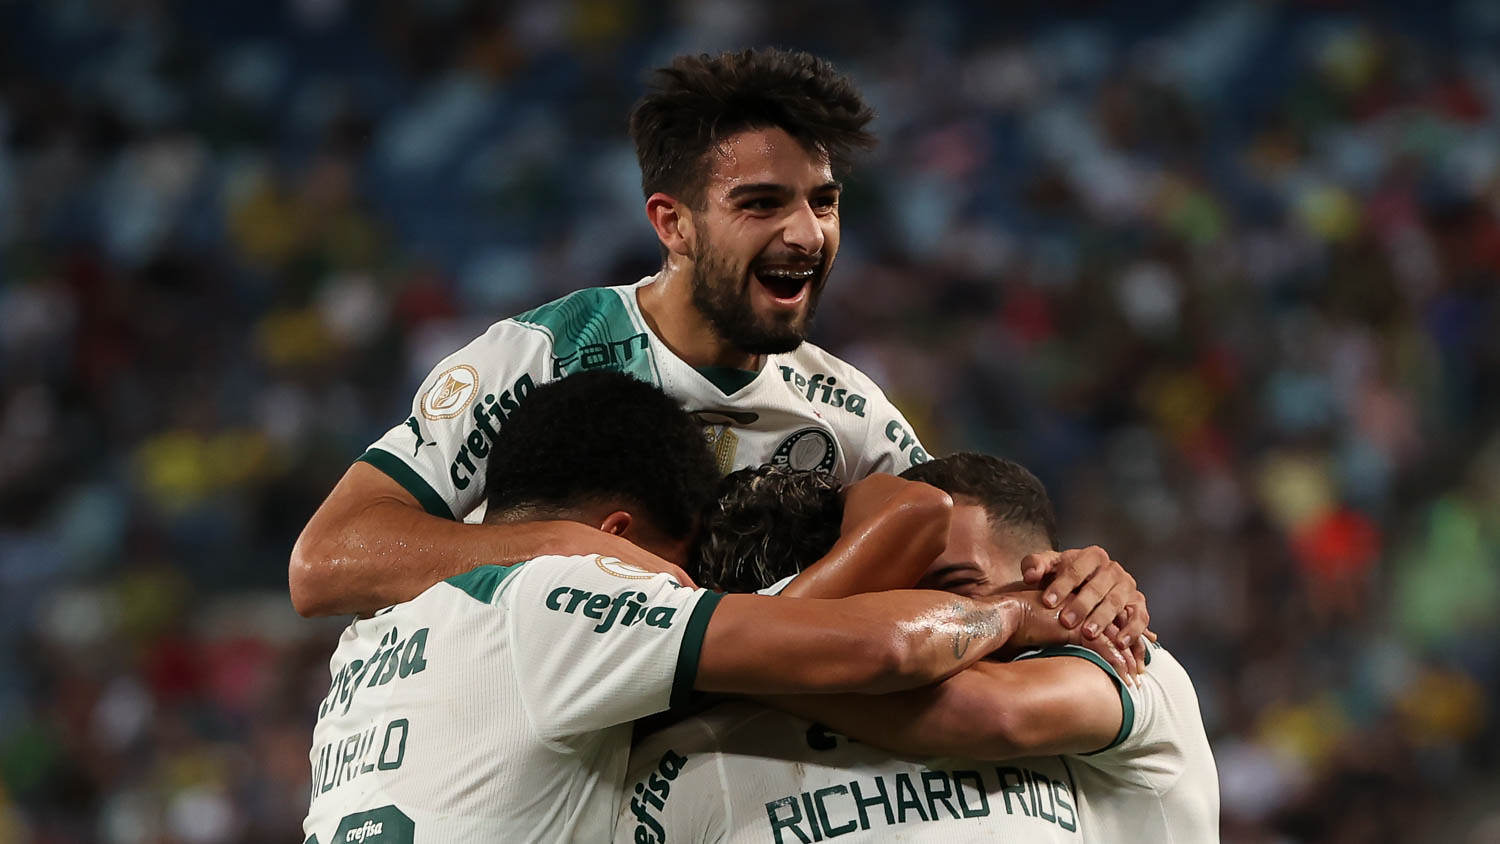 Vidente crava resultado entre Deportivo Pereira x Palmeiras pela  Libertadores - NossoPalmeiras